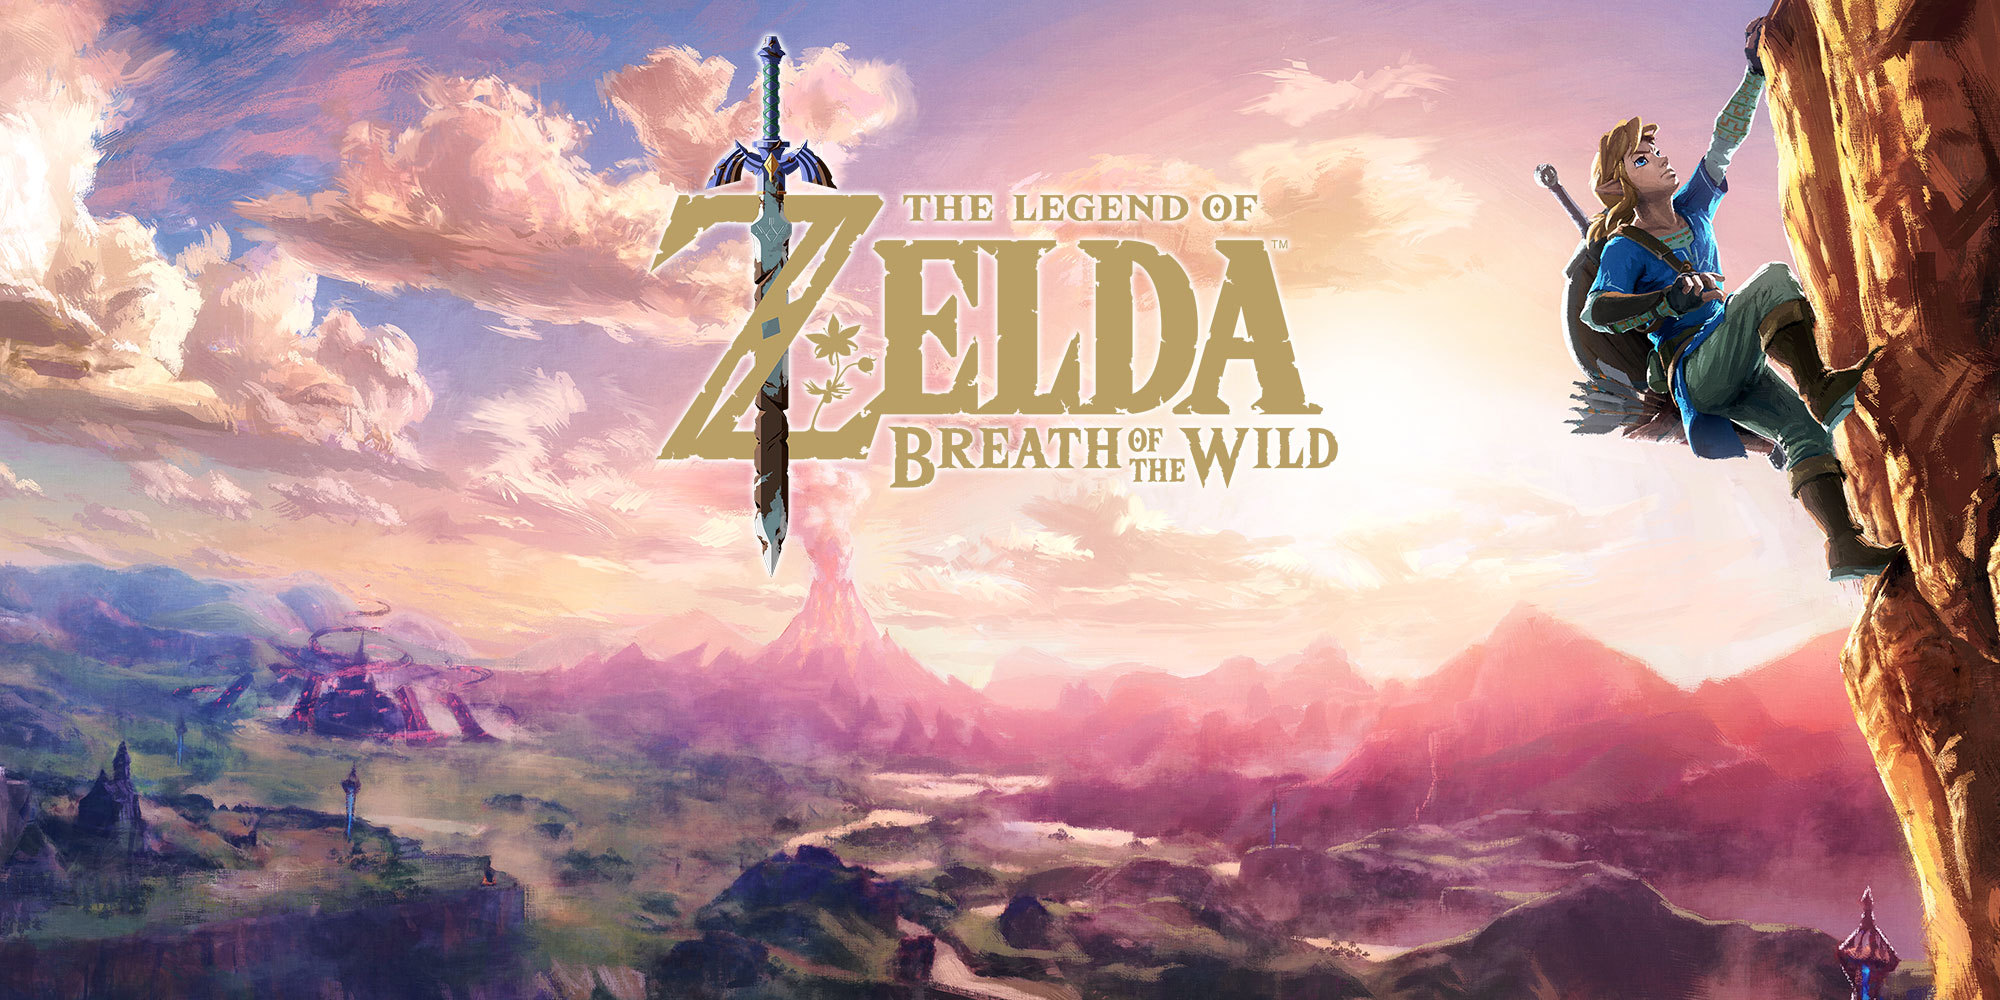 Legend Of Zelda Breath Of The Wild Nintendo , HD Wallpaper & Backgrounds